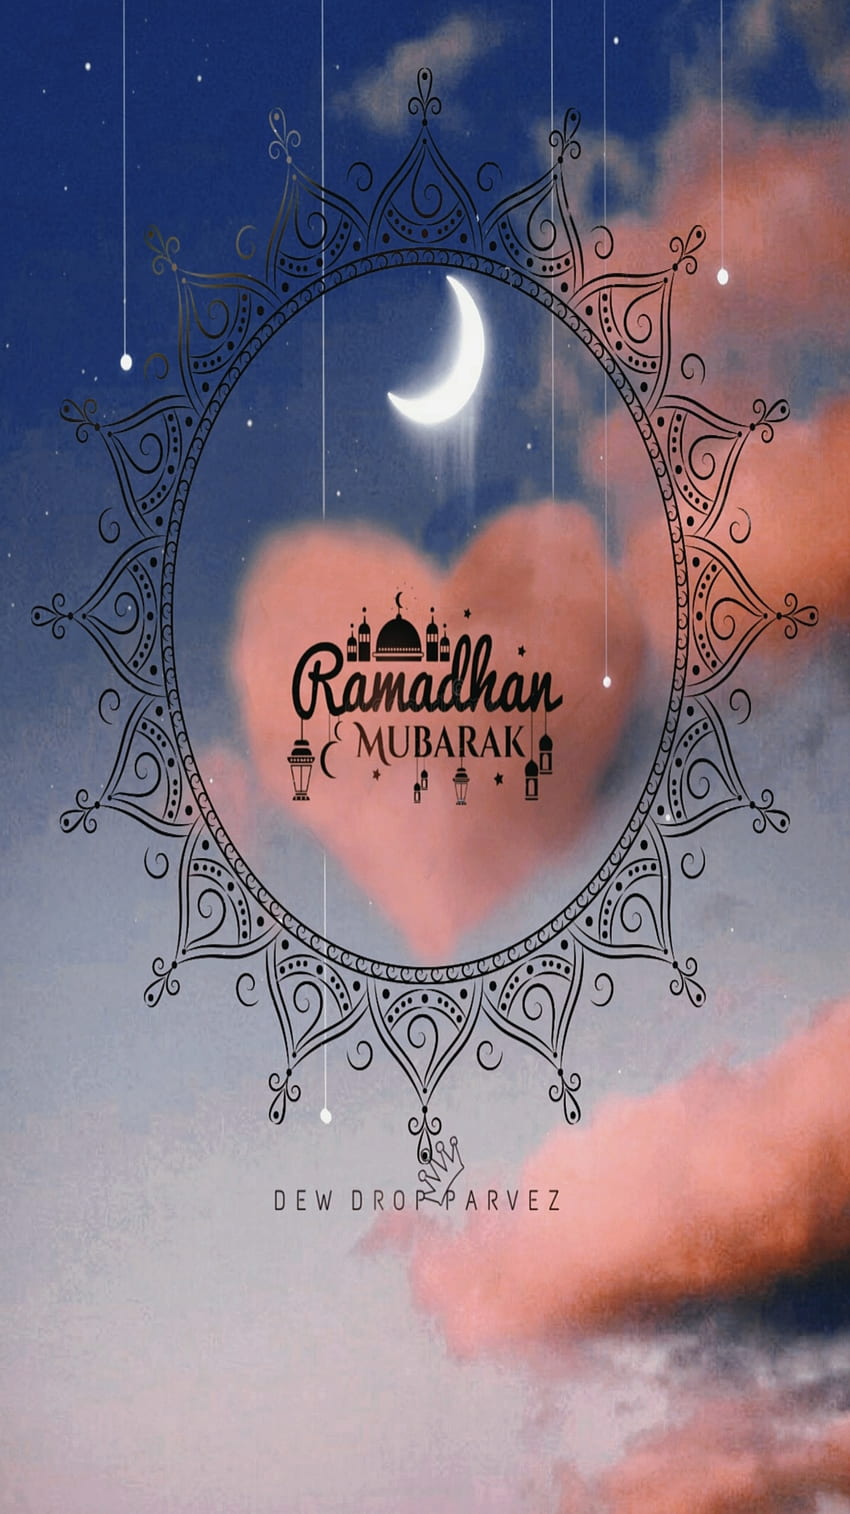 Eid Mubarak: Tấm lòng của mình luôn được chào đón lễ Eid Mubarak với tình yêu và sự đoàn kết của cộng đồng. Chia sẻ niềm vui và đoàn kết này bằng cách xem những hình ảnh đẹp về Eid Mubarak nhé!